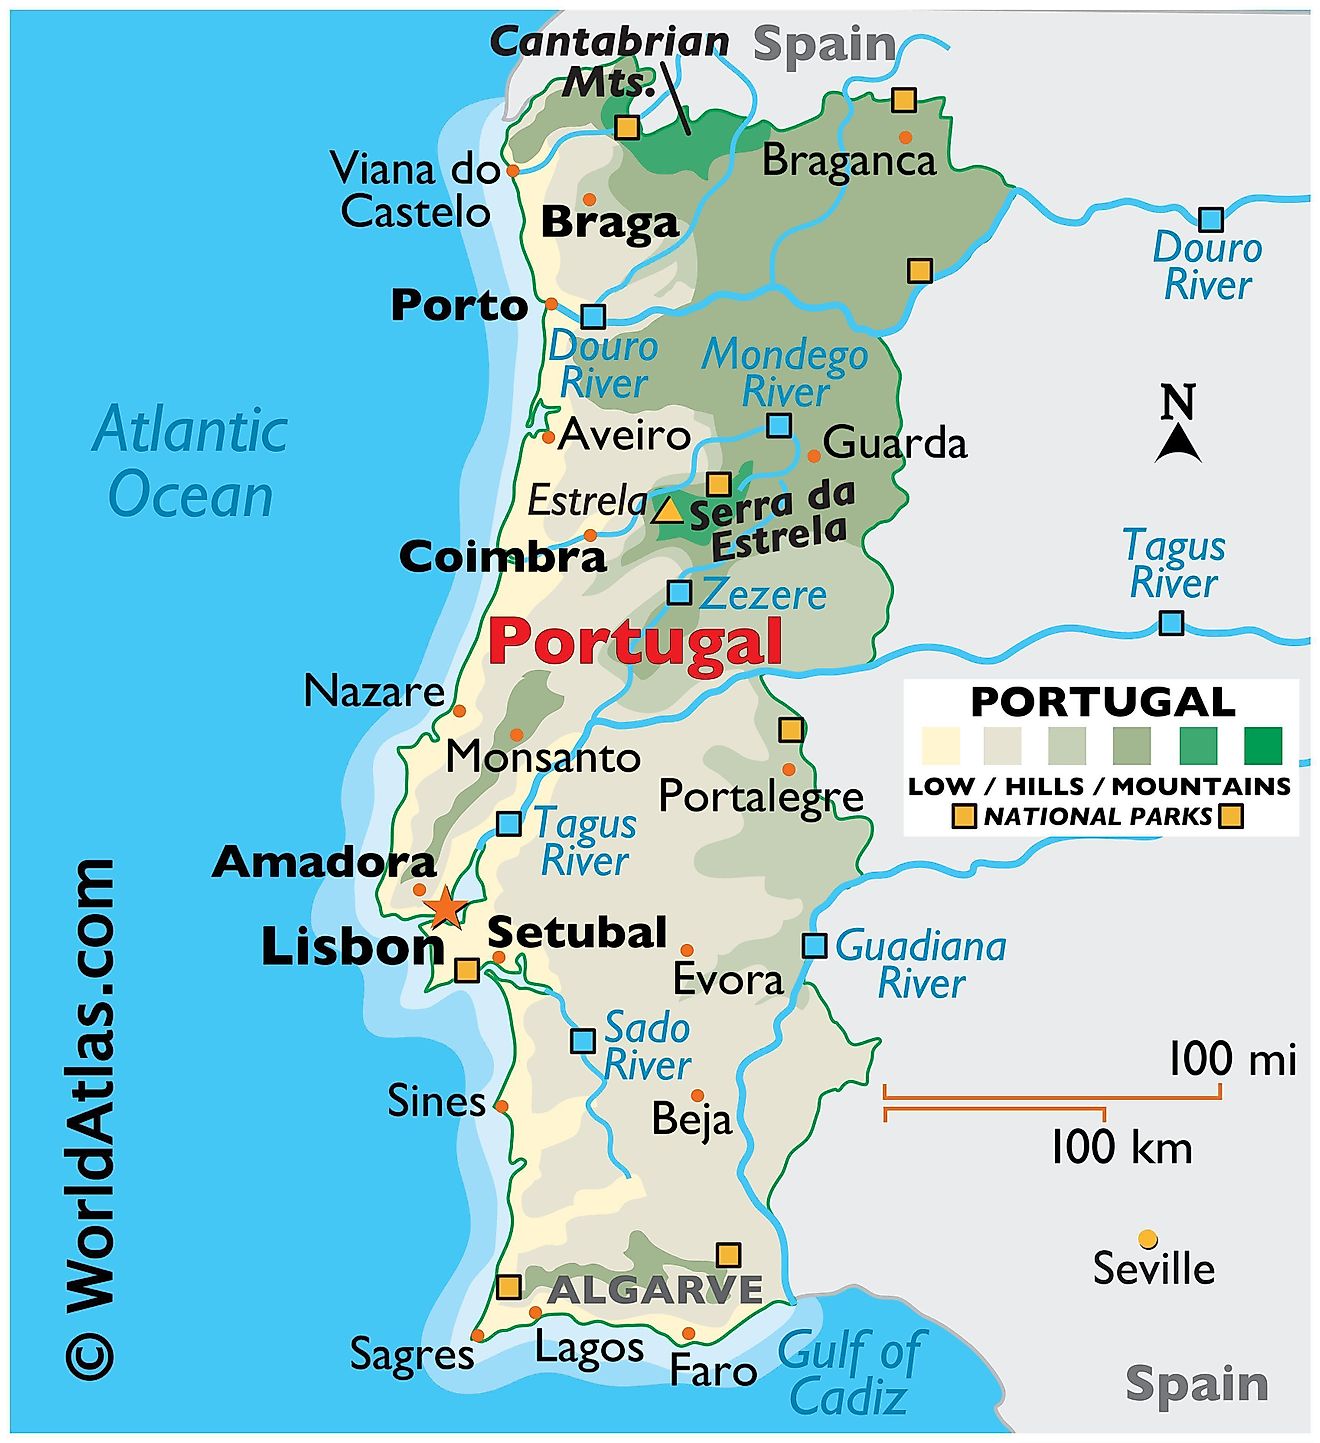 Mapa físico de Portugal que muestra el relieve, las fronteras internacionales, los principales ríos, las cadenas montañosas, los puntos extremos, las ciudades importantes, etc.